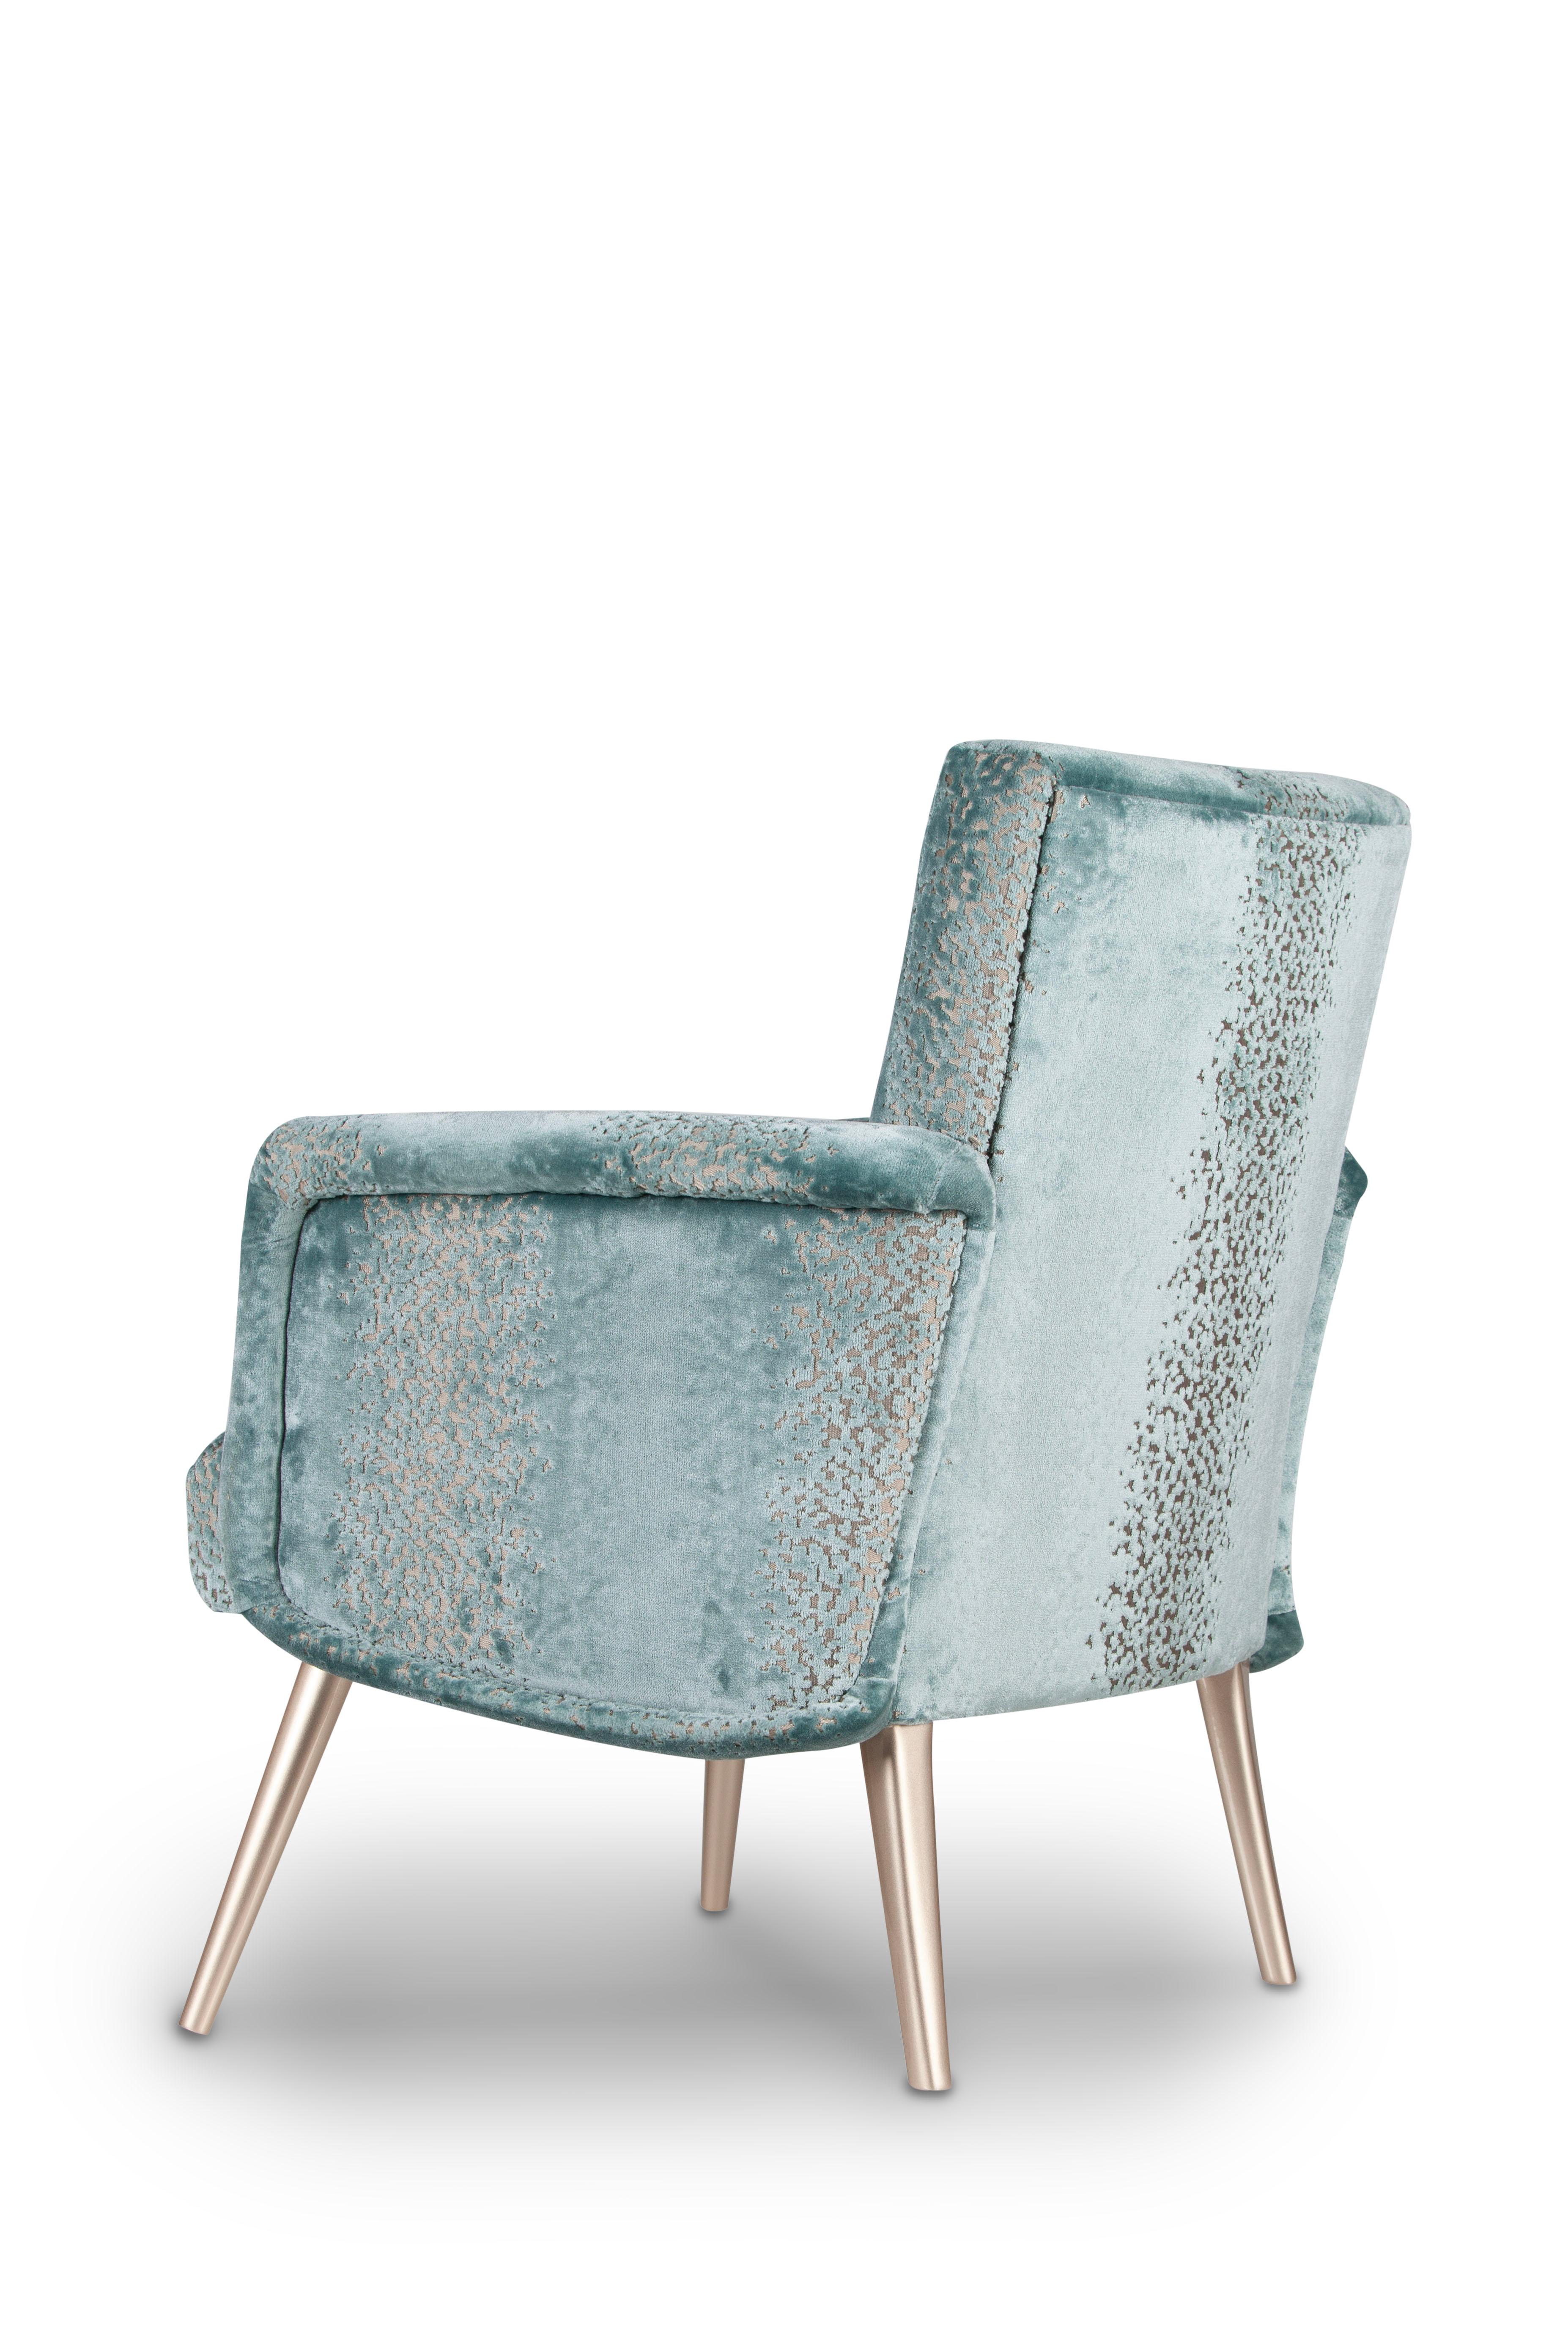 Leo Armchair, Collection'S Contemporary, handgefertigt in Portugal - Europa von Greenapple.

Leo gibt dem traditionellen Sessel eine moderne Wendung.
Die üppige Polsterung aus mintgrünem Samt harmoniert mühelos mit den champagnerfarben lackierten